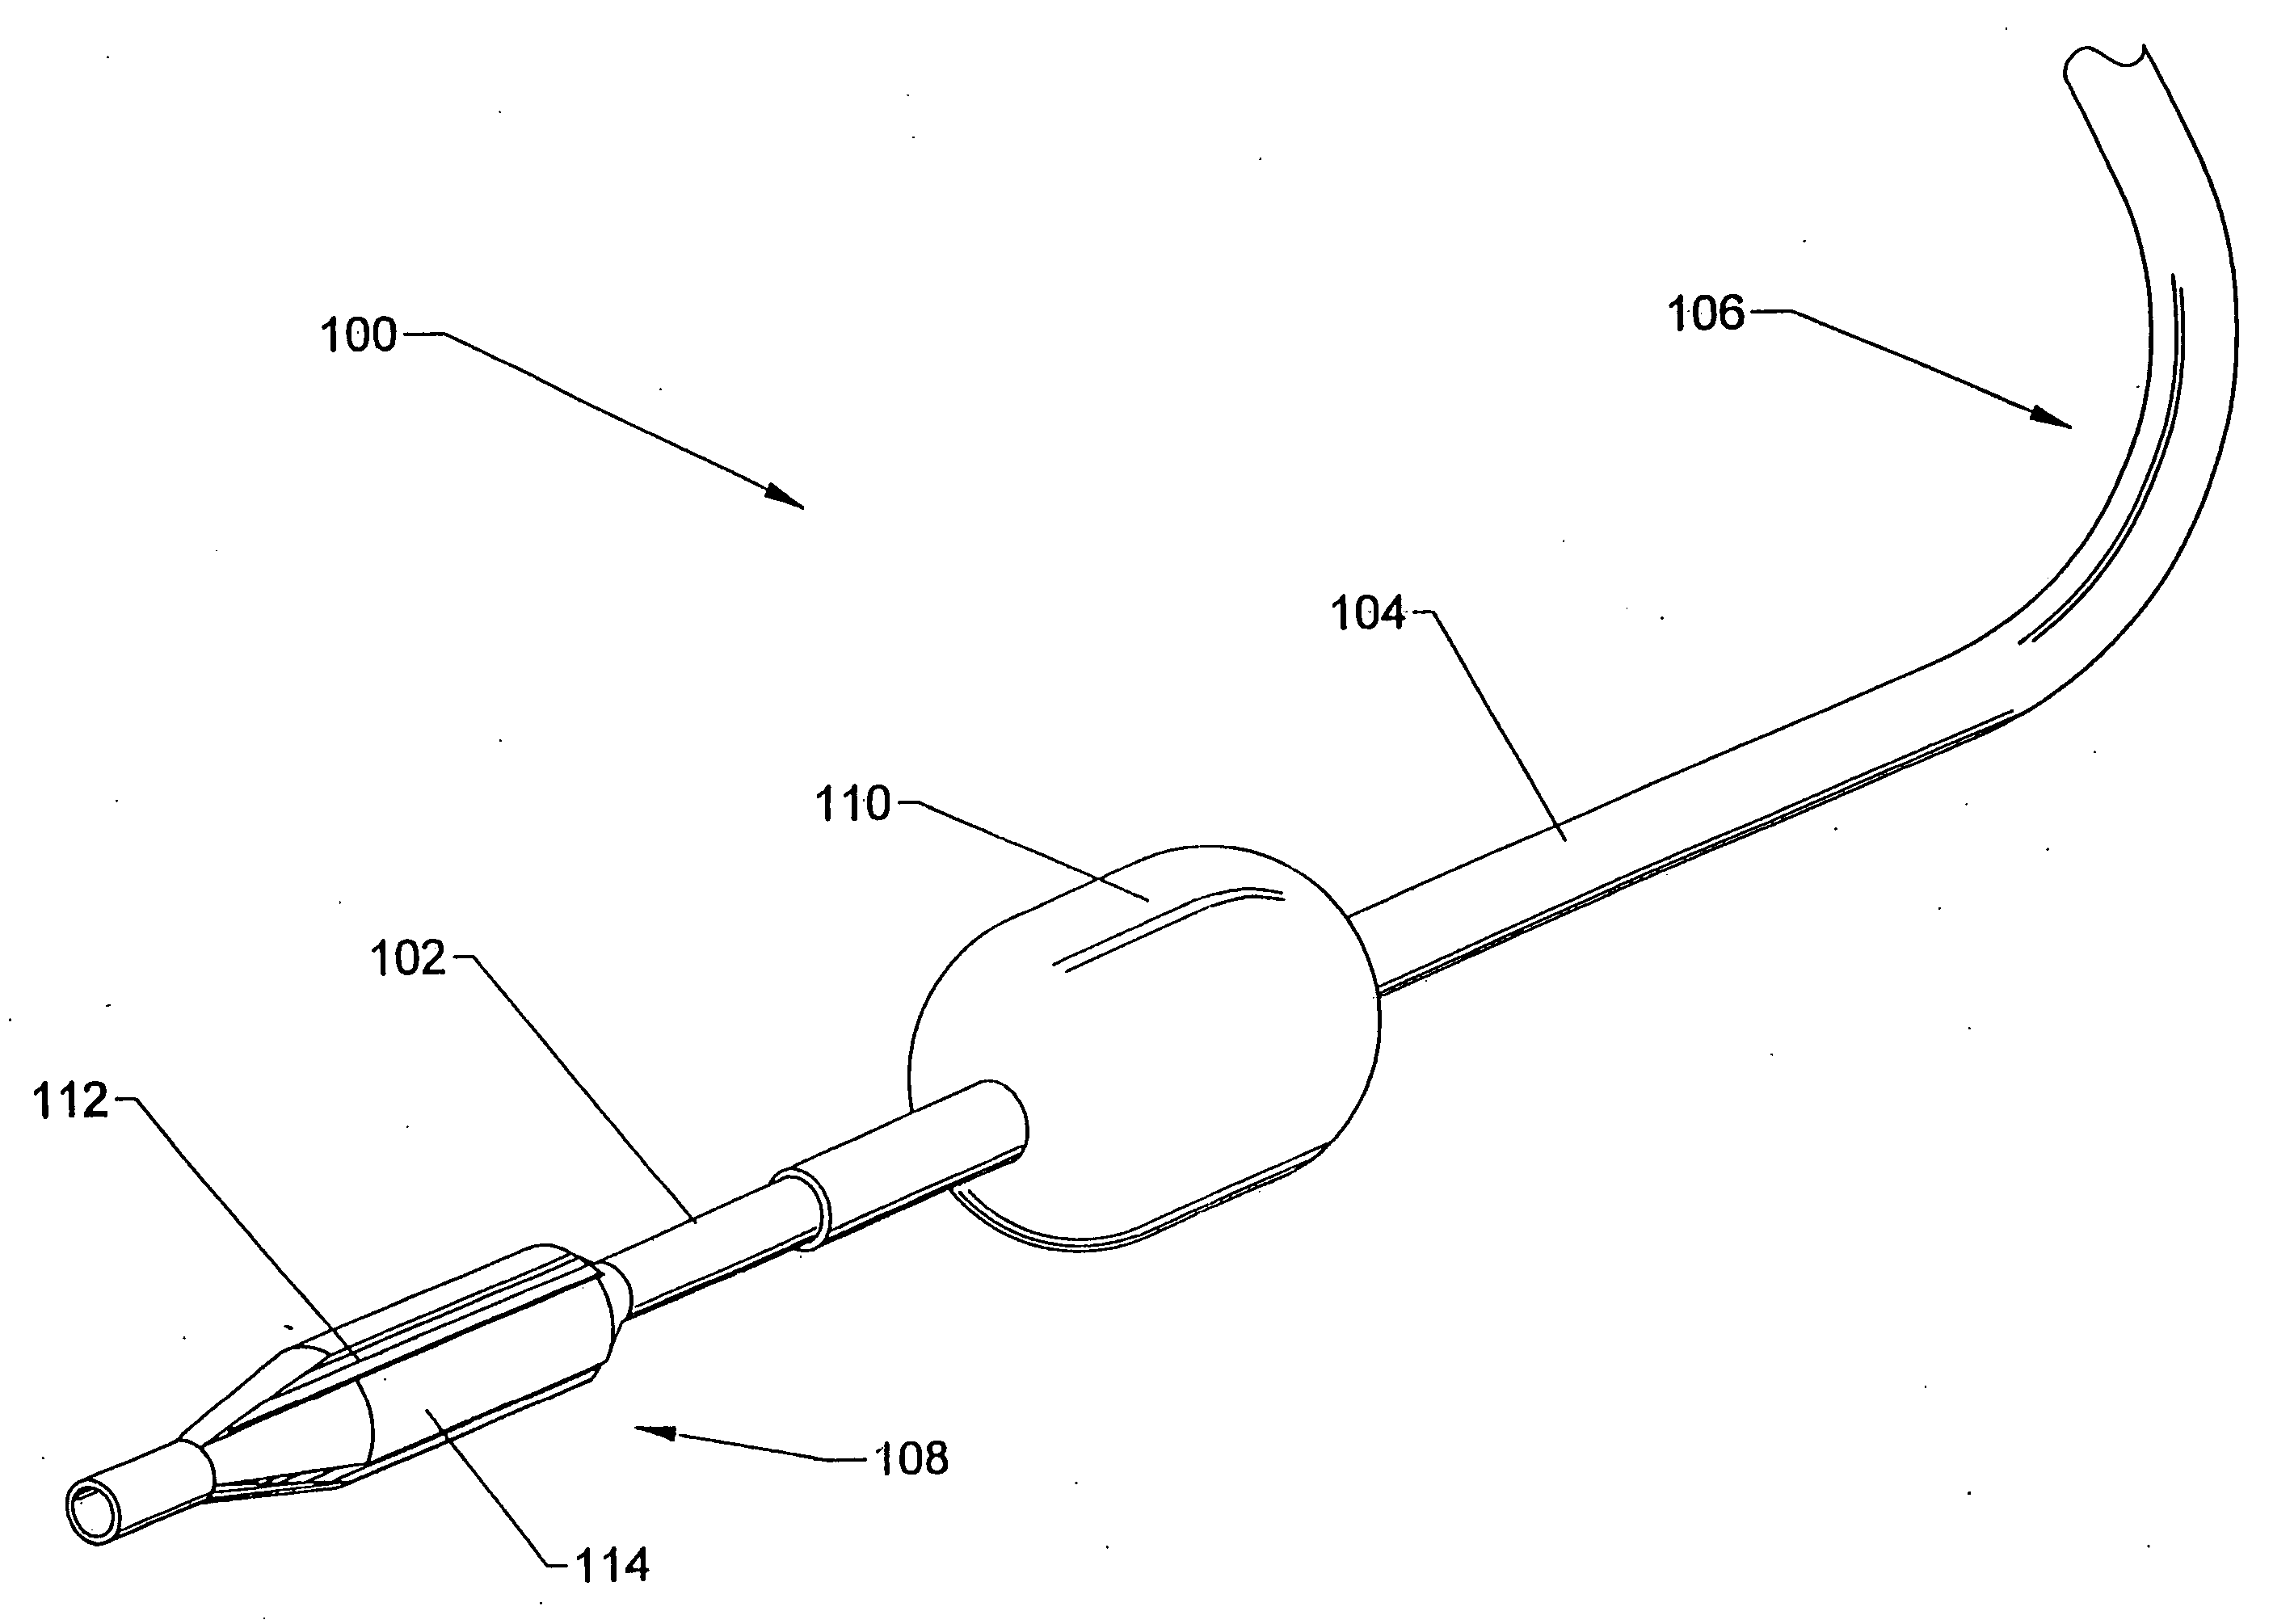 Methods using a dual balloon telescoping guiding catheter